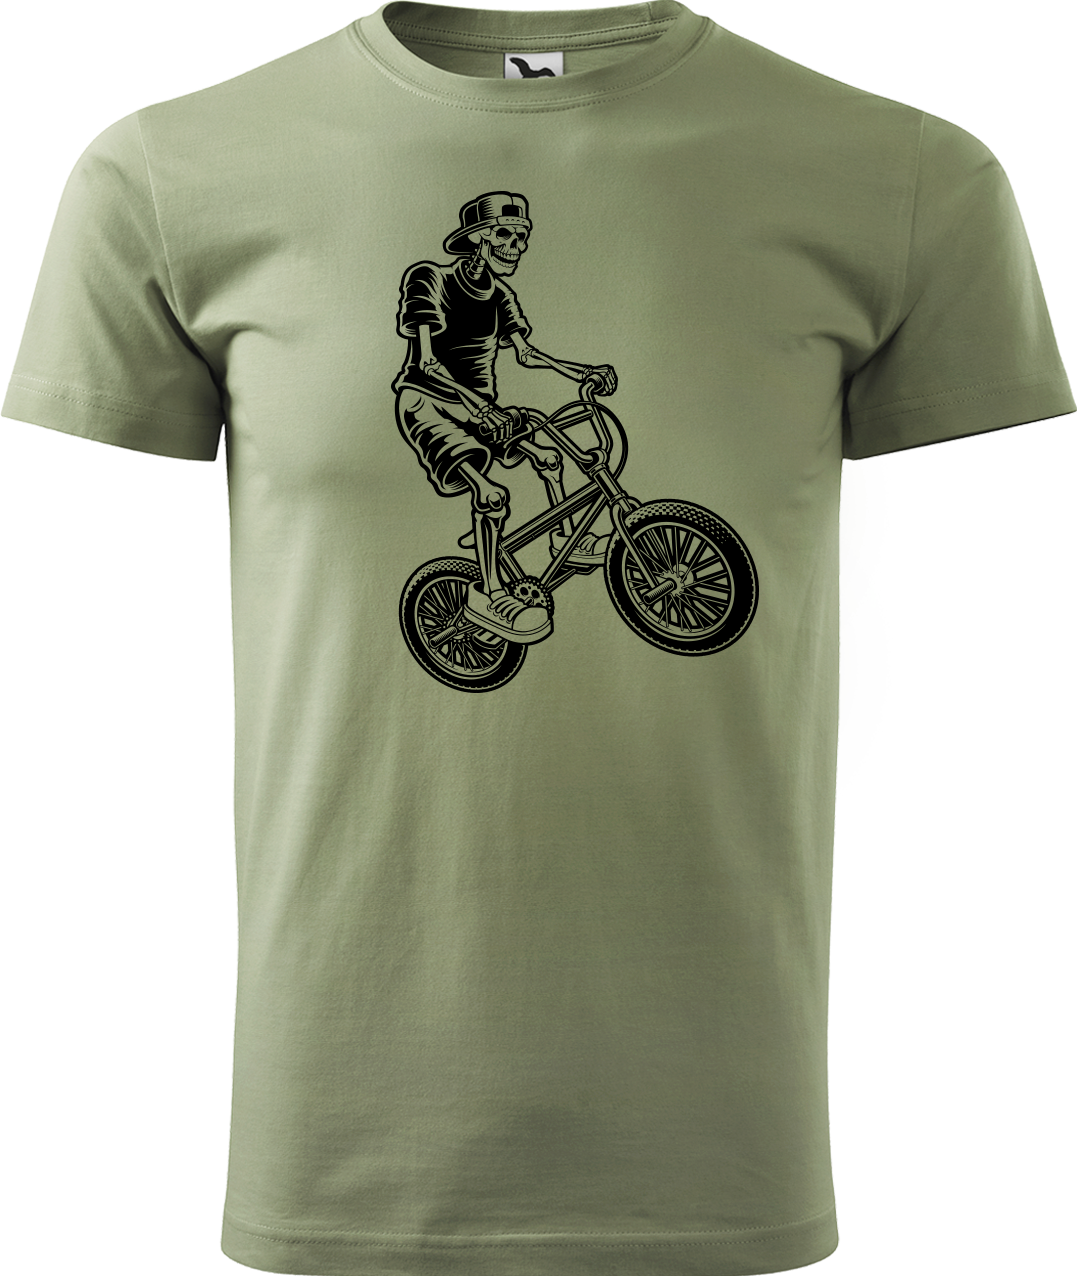 Pánské tričko s kolem - Trial Bike Velikost: 4XL, Barva: Světlá khaki (28)